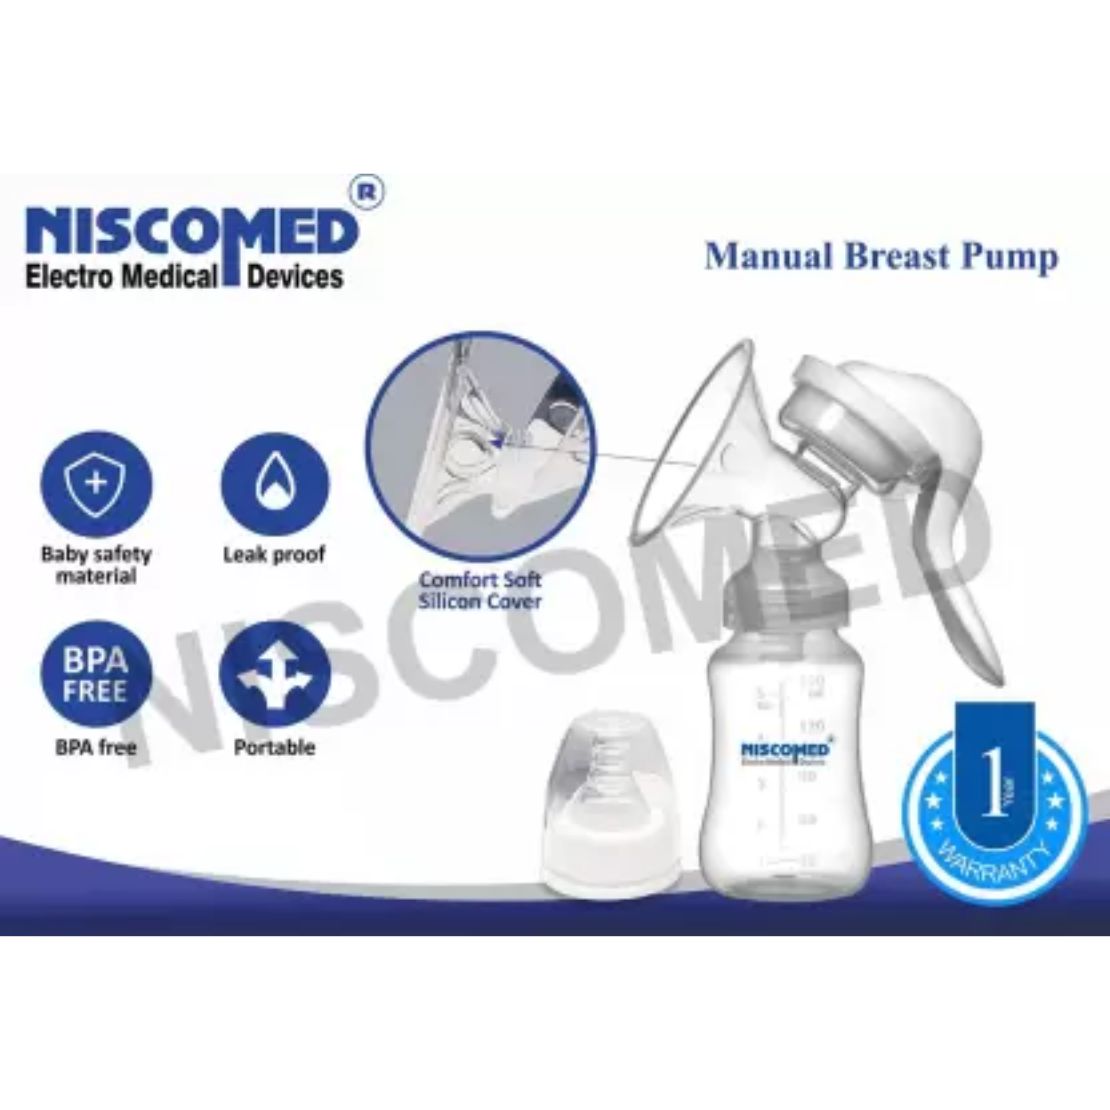 Niscomed Manual Breast Pump